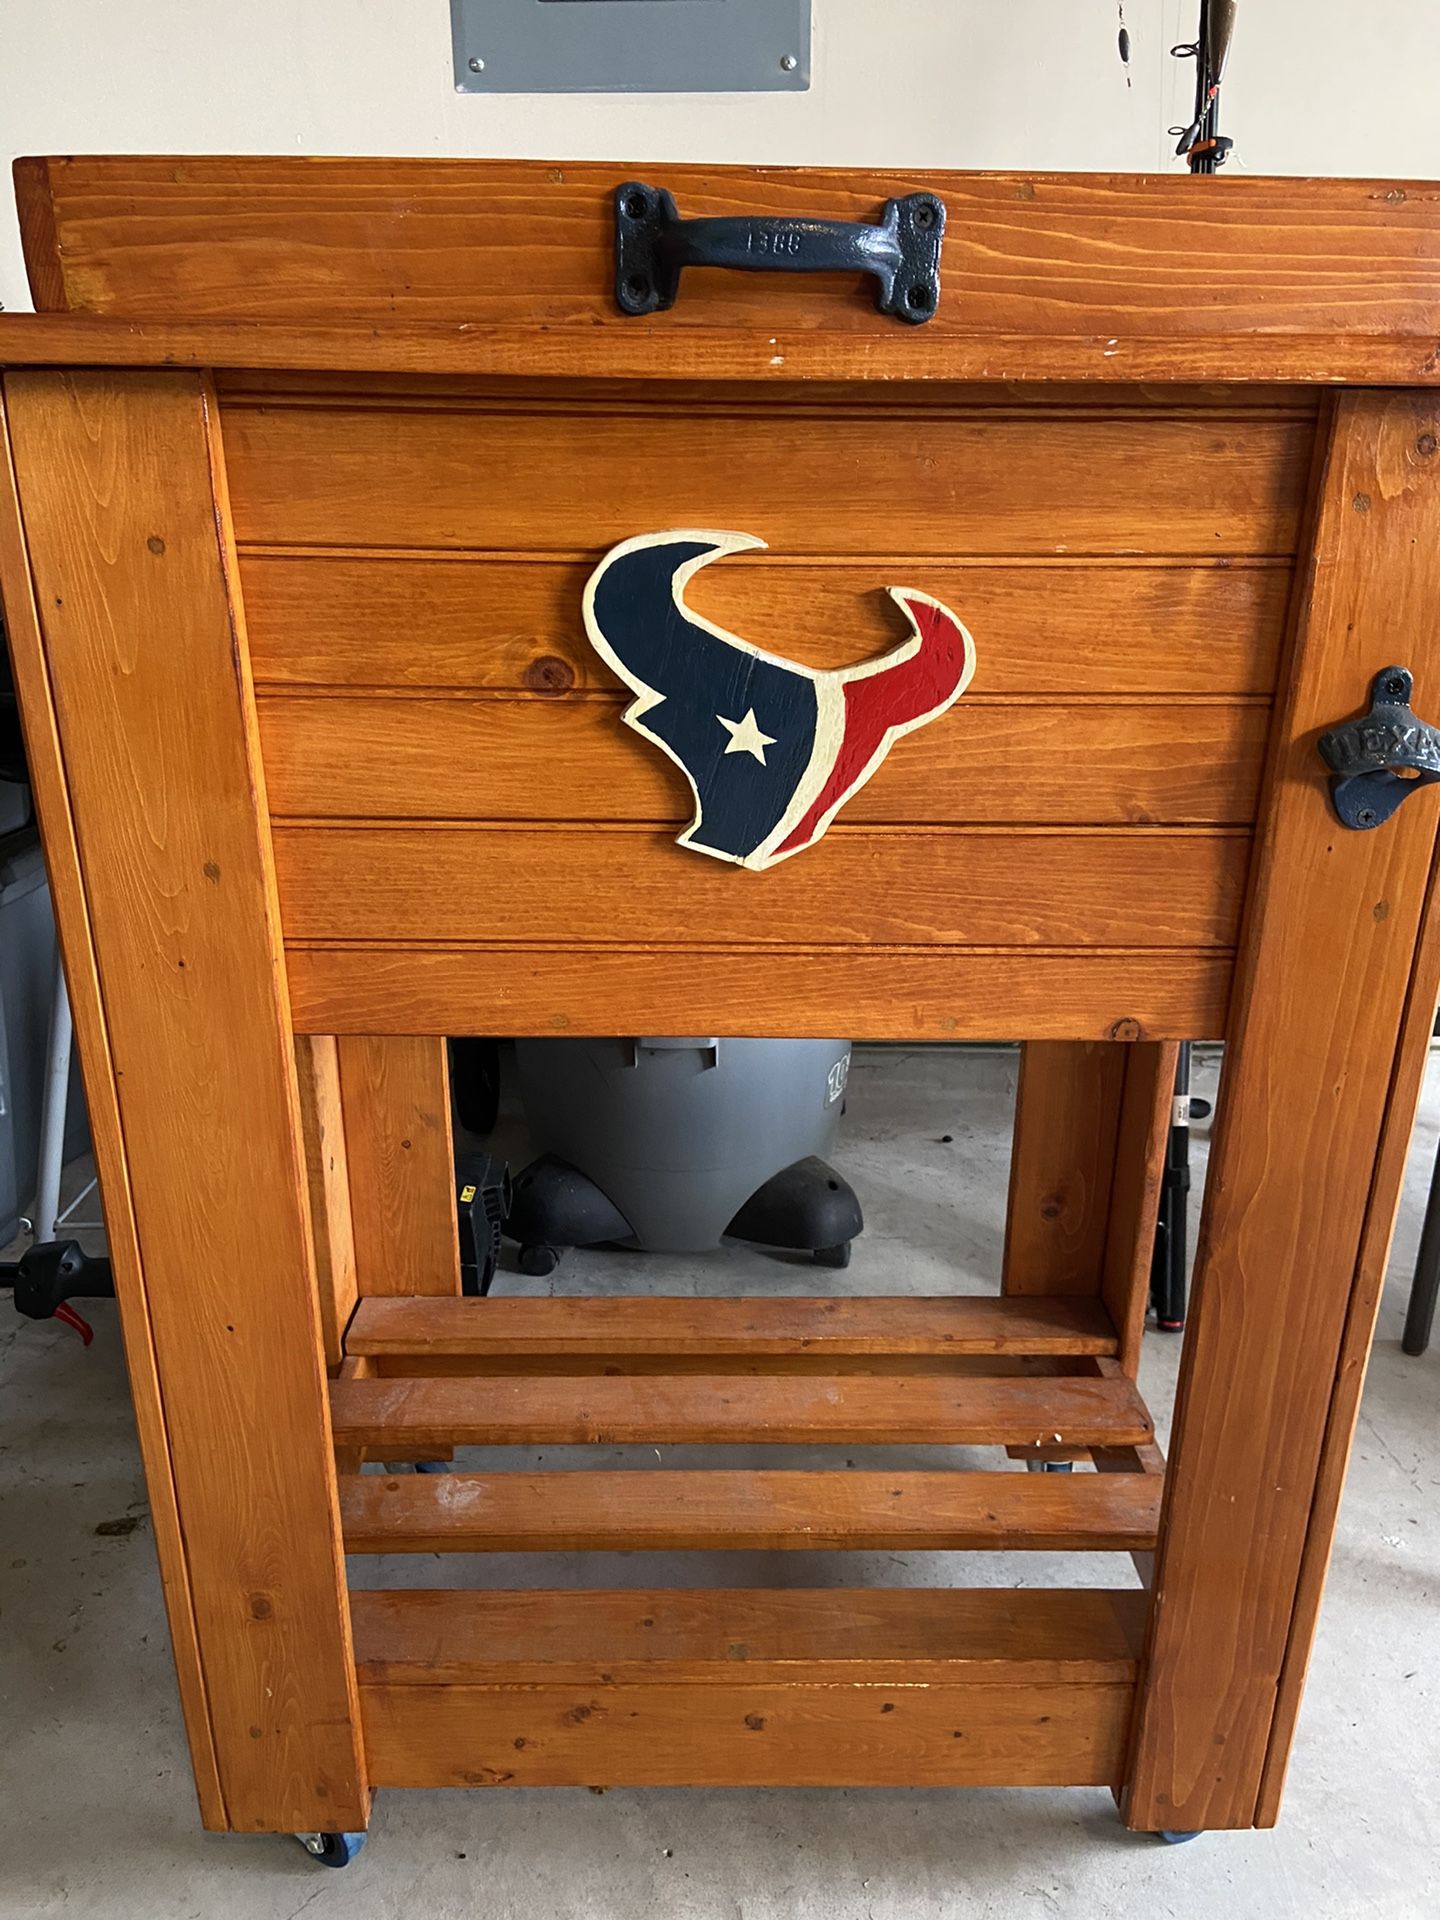 Texan wooden cooler